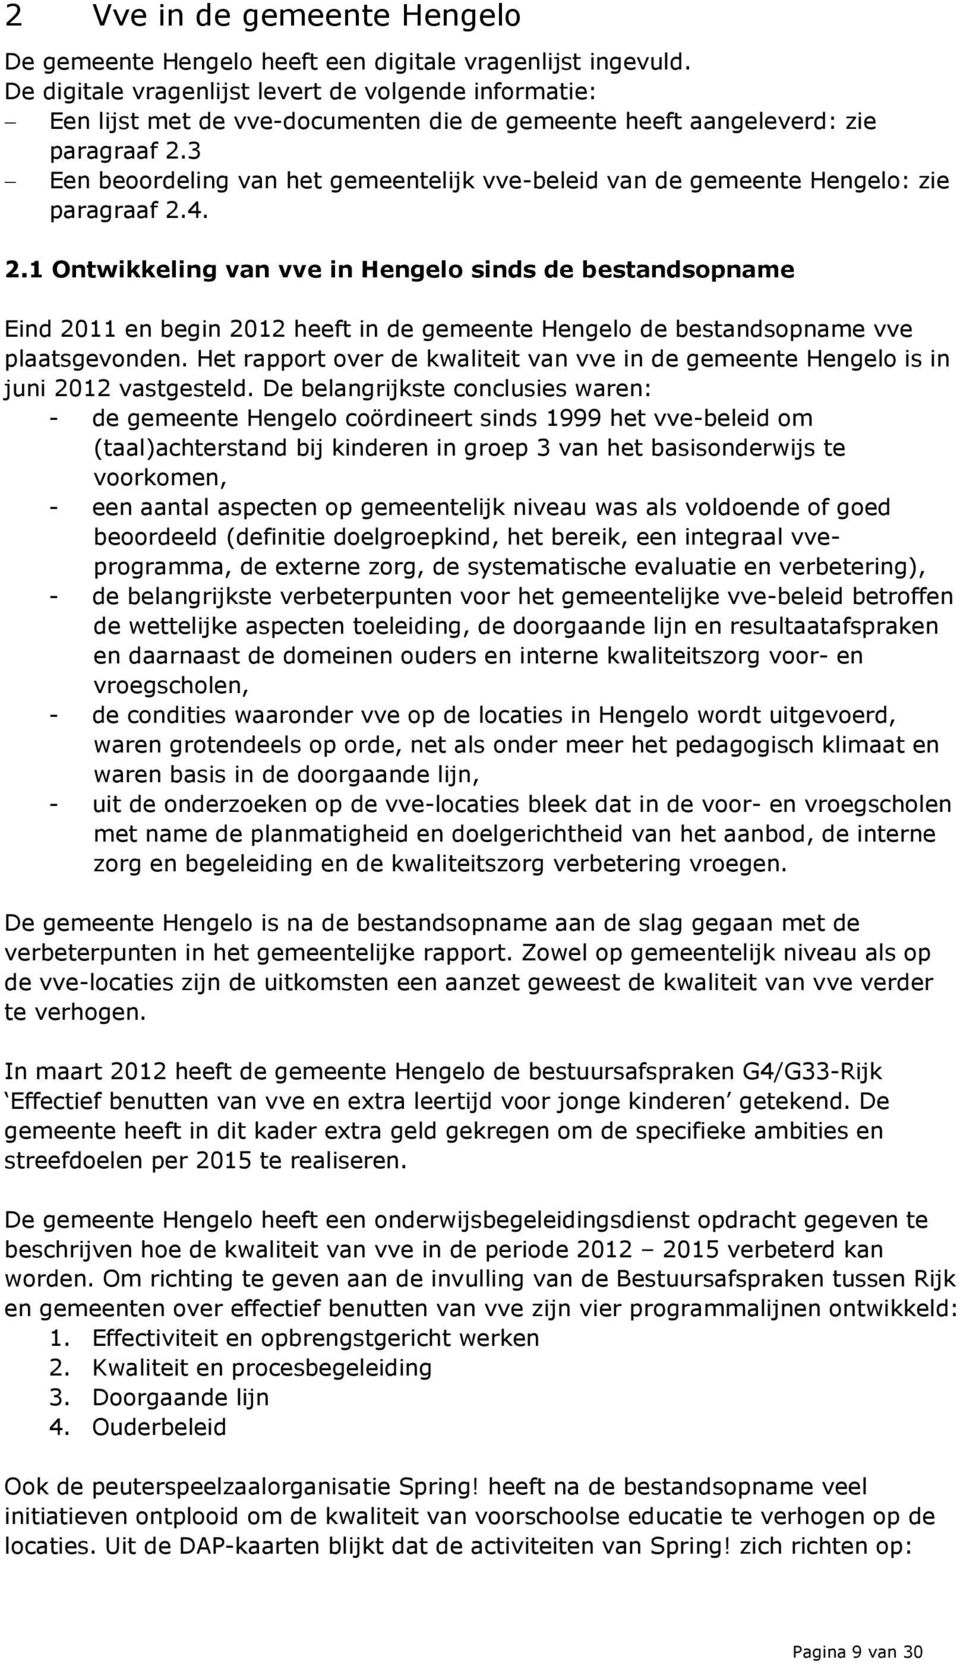 3 Een beoordeling van het gemeentelijk vve-beleid van de gemeente Hengelo: zie paragraaf 2.